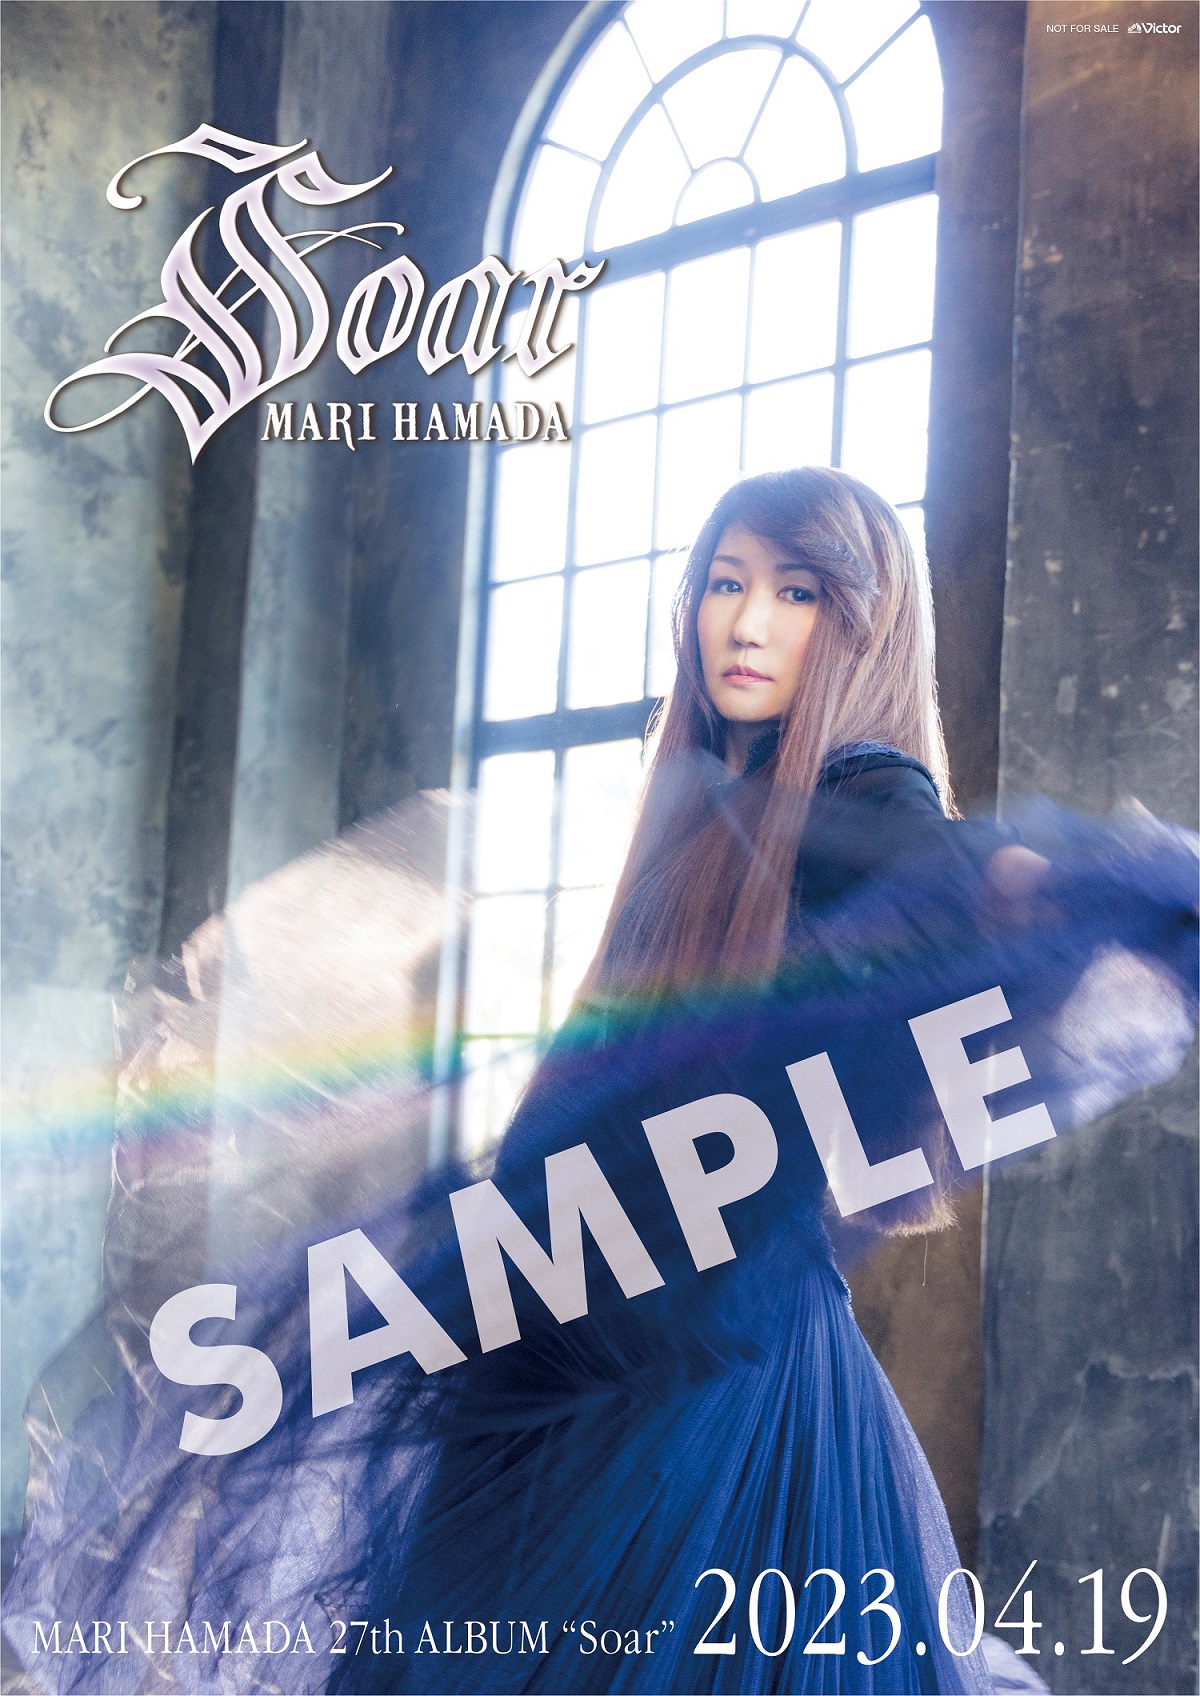 Soar | 初回限定盤 | CD(アルバム) | 浜田麻里 | VICTOR ONLINE STORE